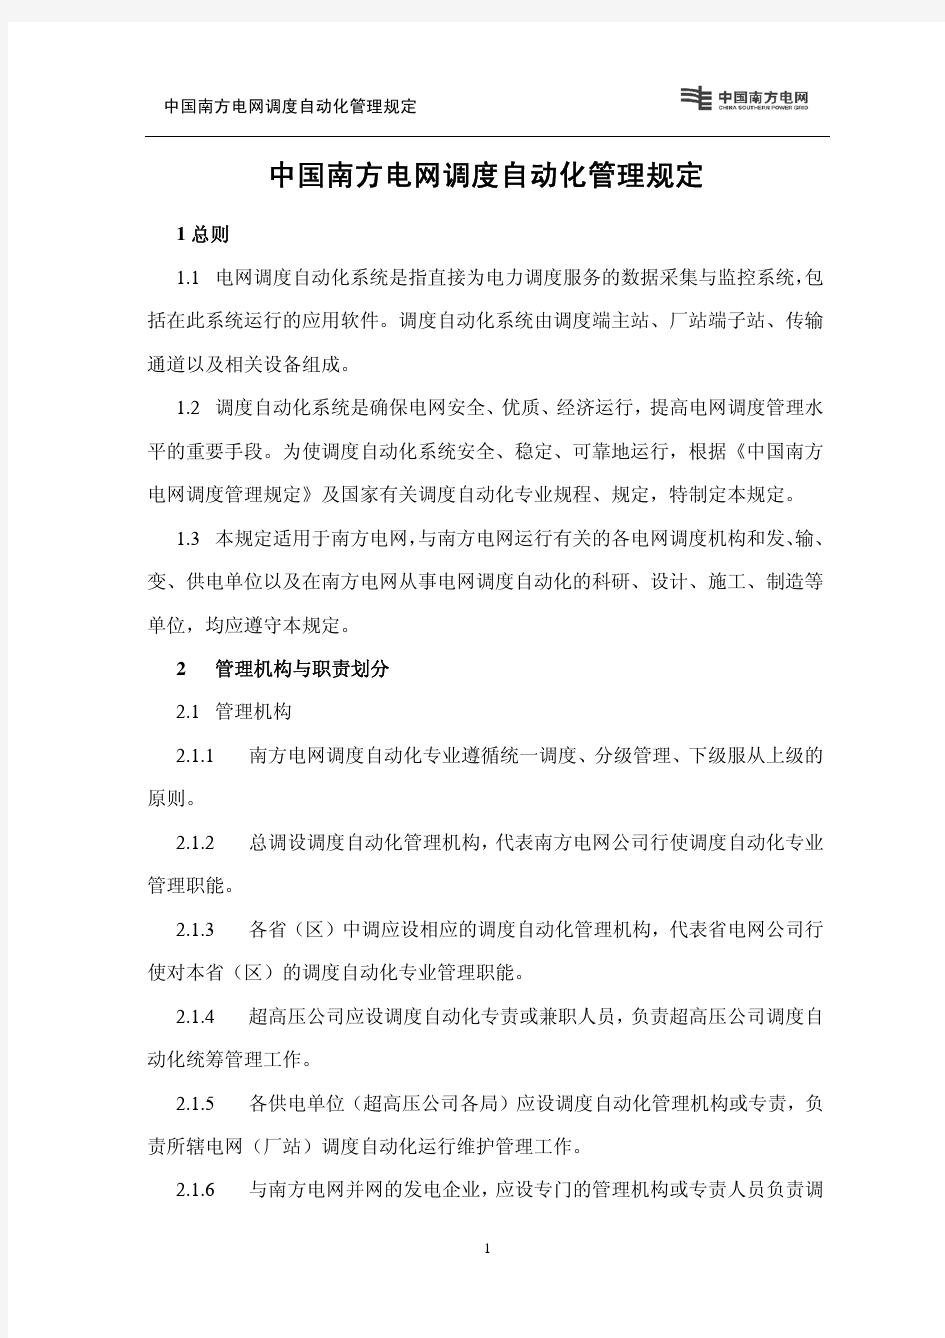 中国南方电网调度自动化管理规定